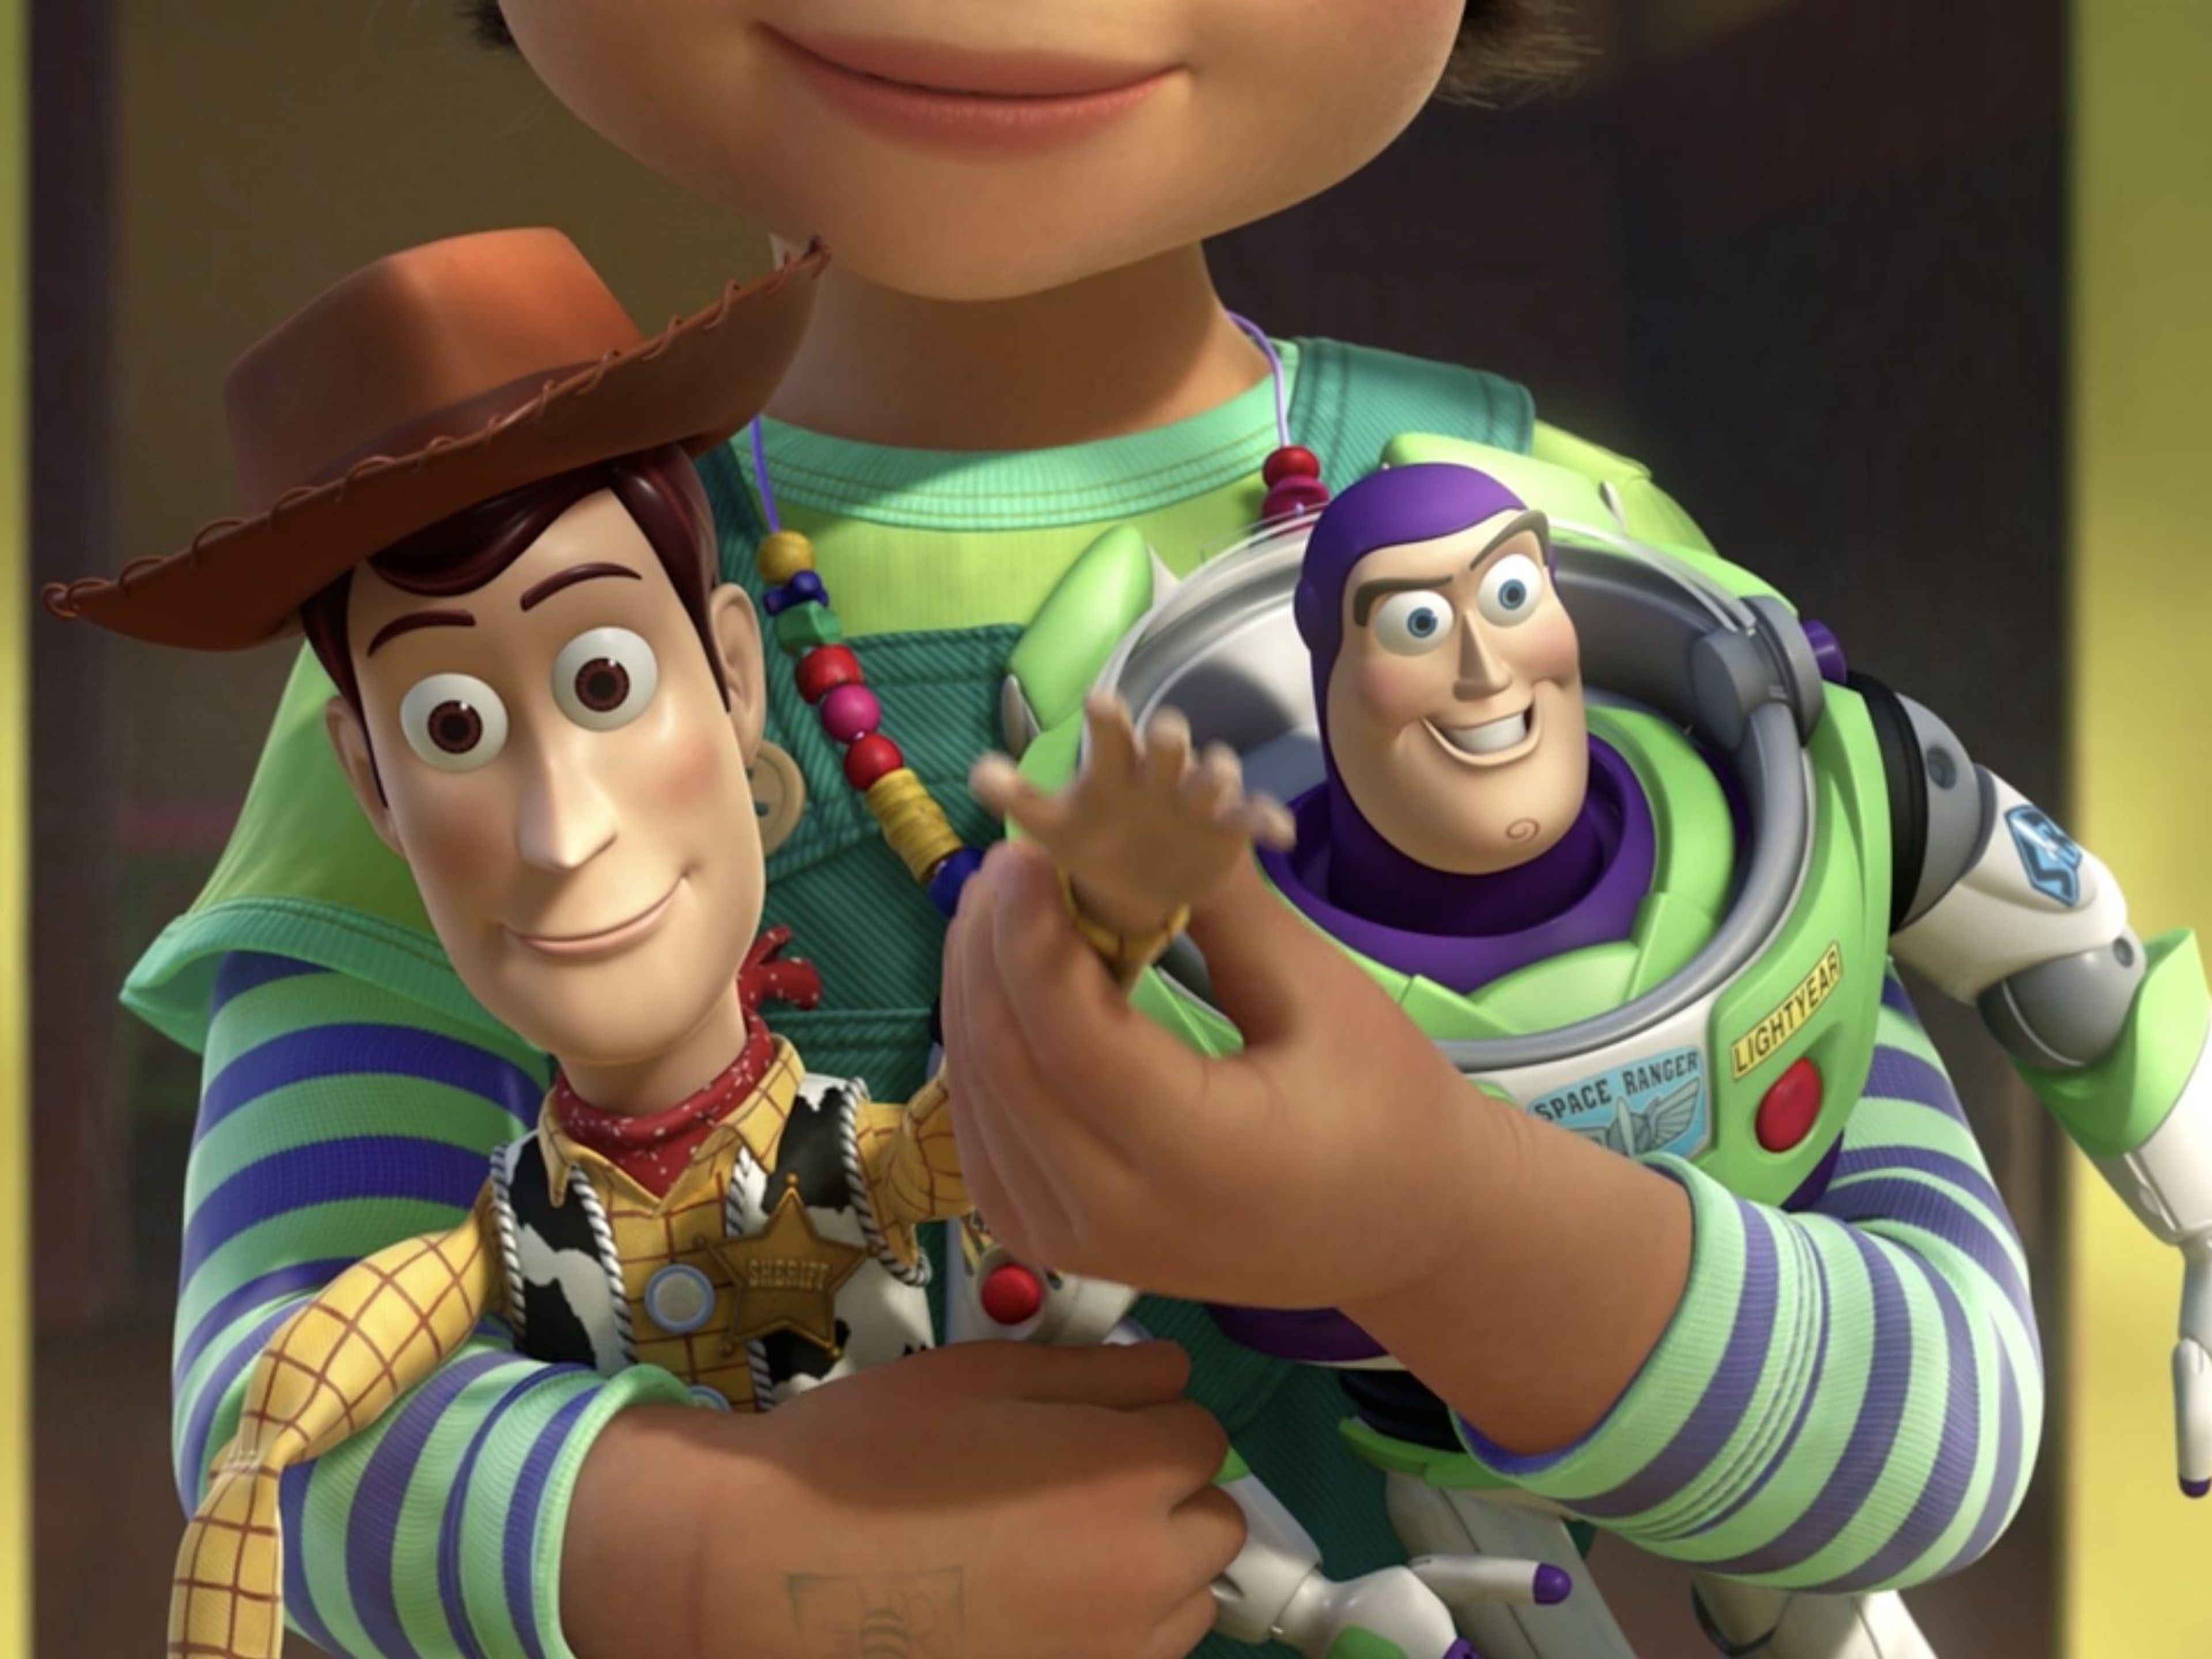 La acción de Woody al final de la película es verdaderamente conmovedora.